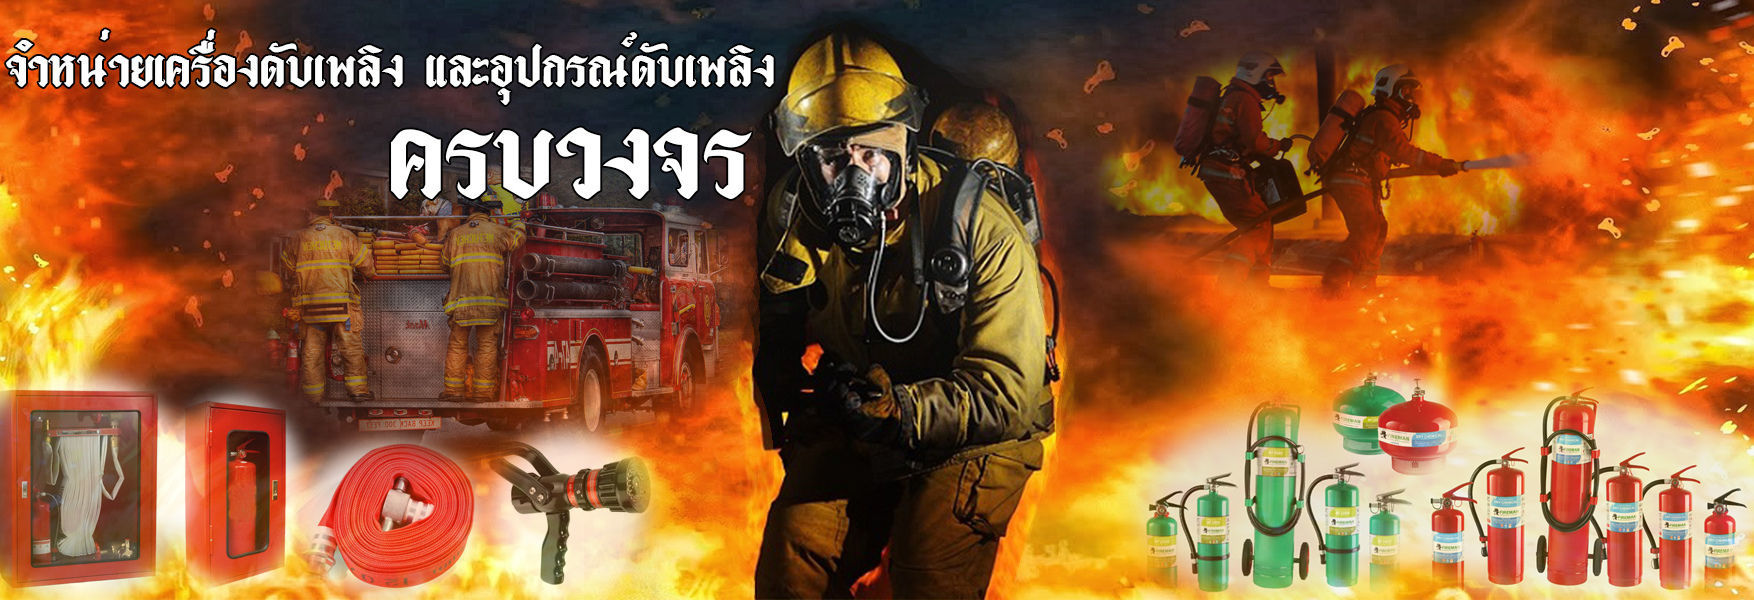 เครื่องดับเพลิง ถังดับเพลิง ถังดับเพลิงเคมีแห้ง ถังดับเพลิงBF2000 ถังดับเพลิงอัตโนมัติ ตู้ดับเพลิง ส